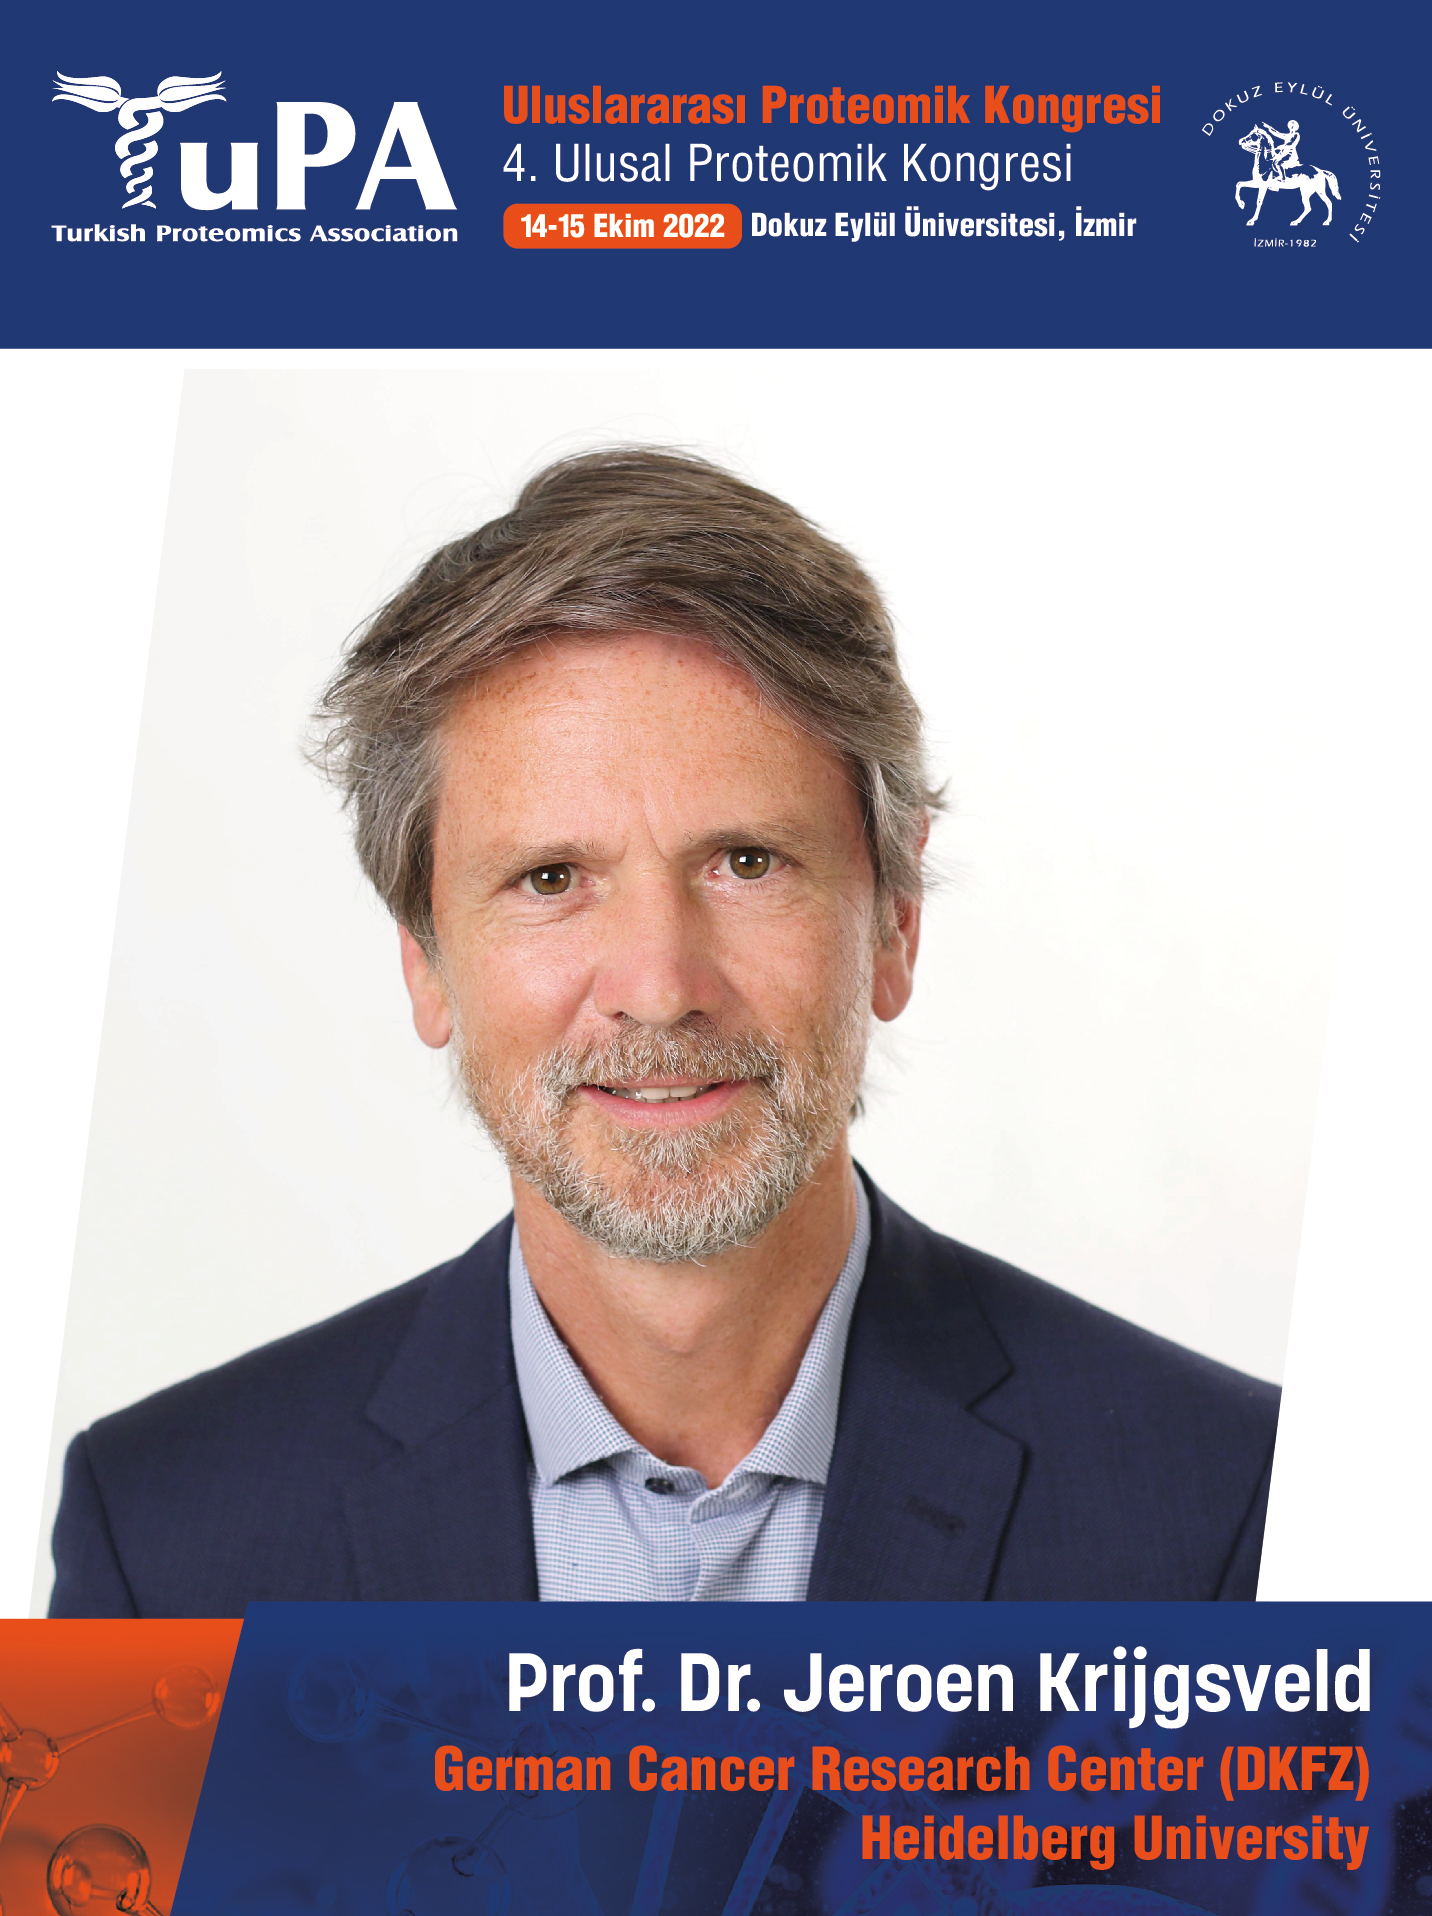 Prof. Dr. Jeroen Krijgsveld